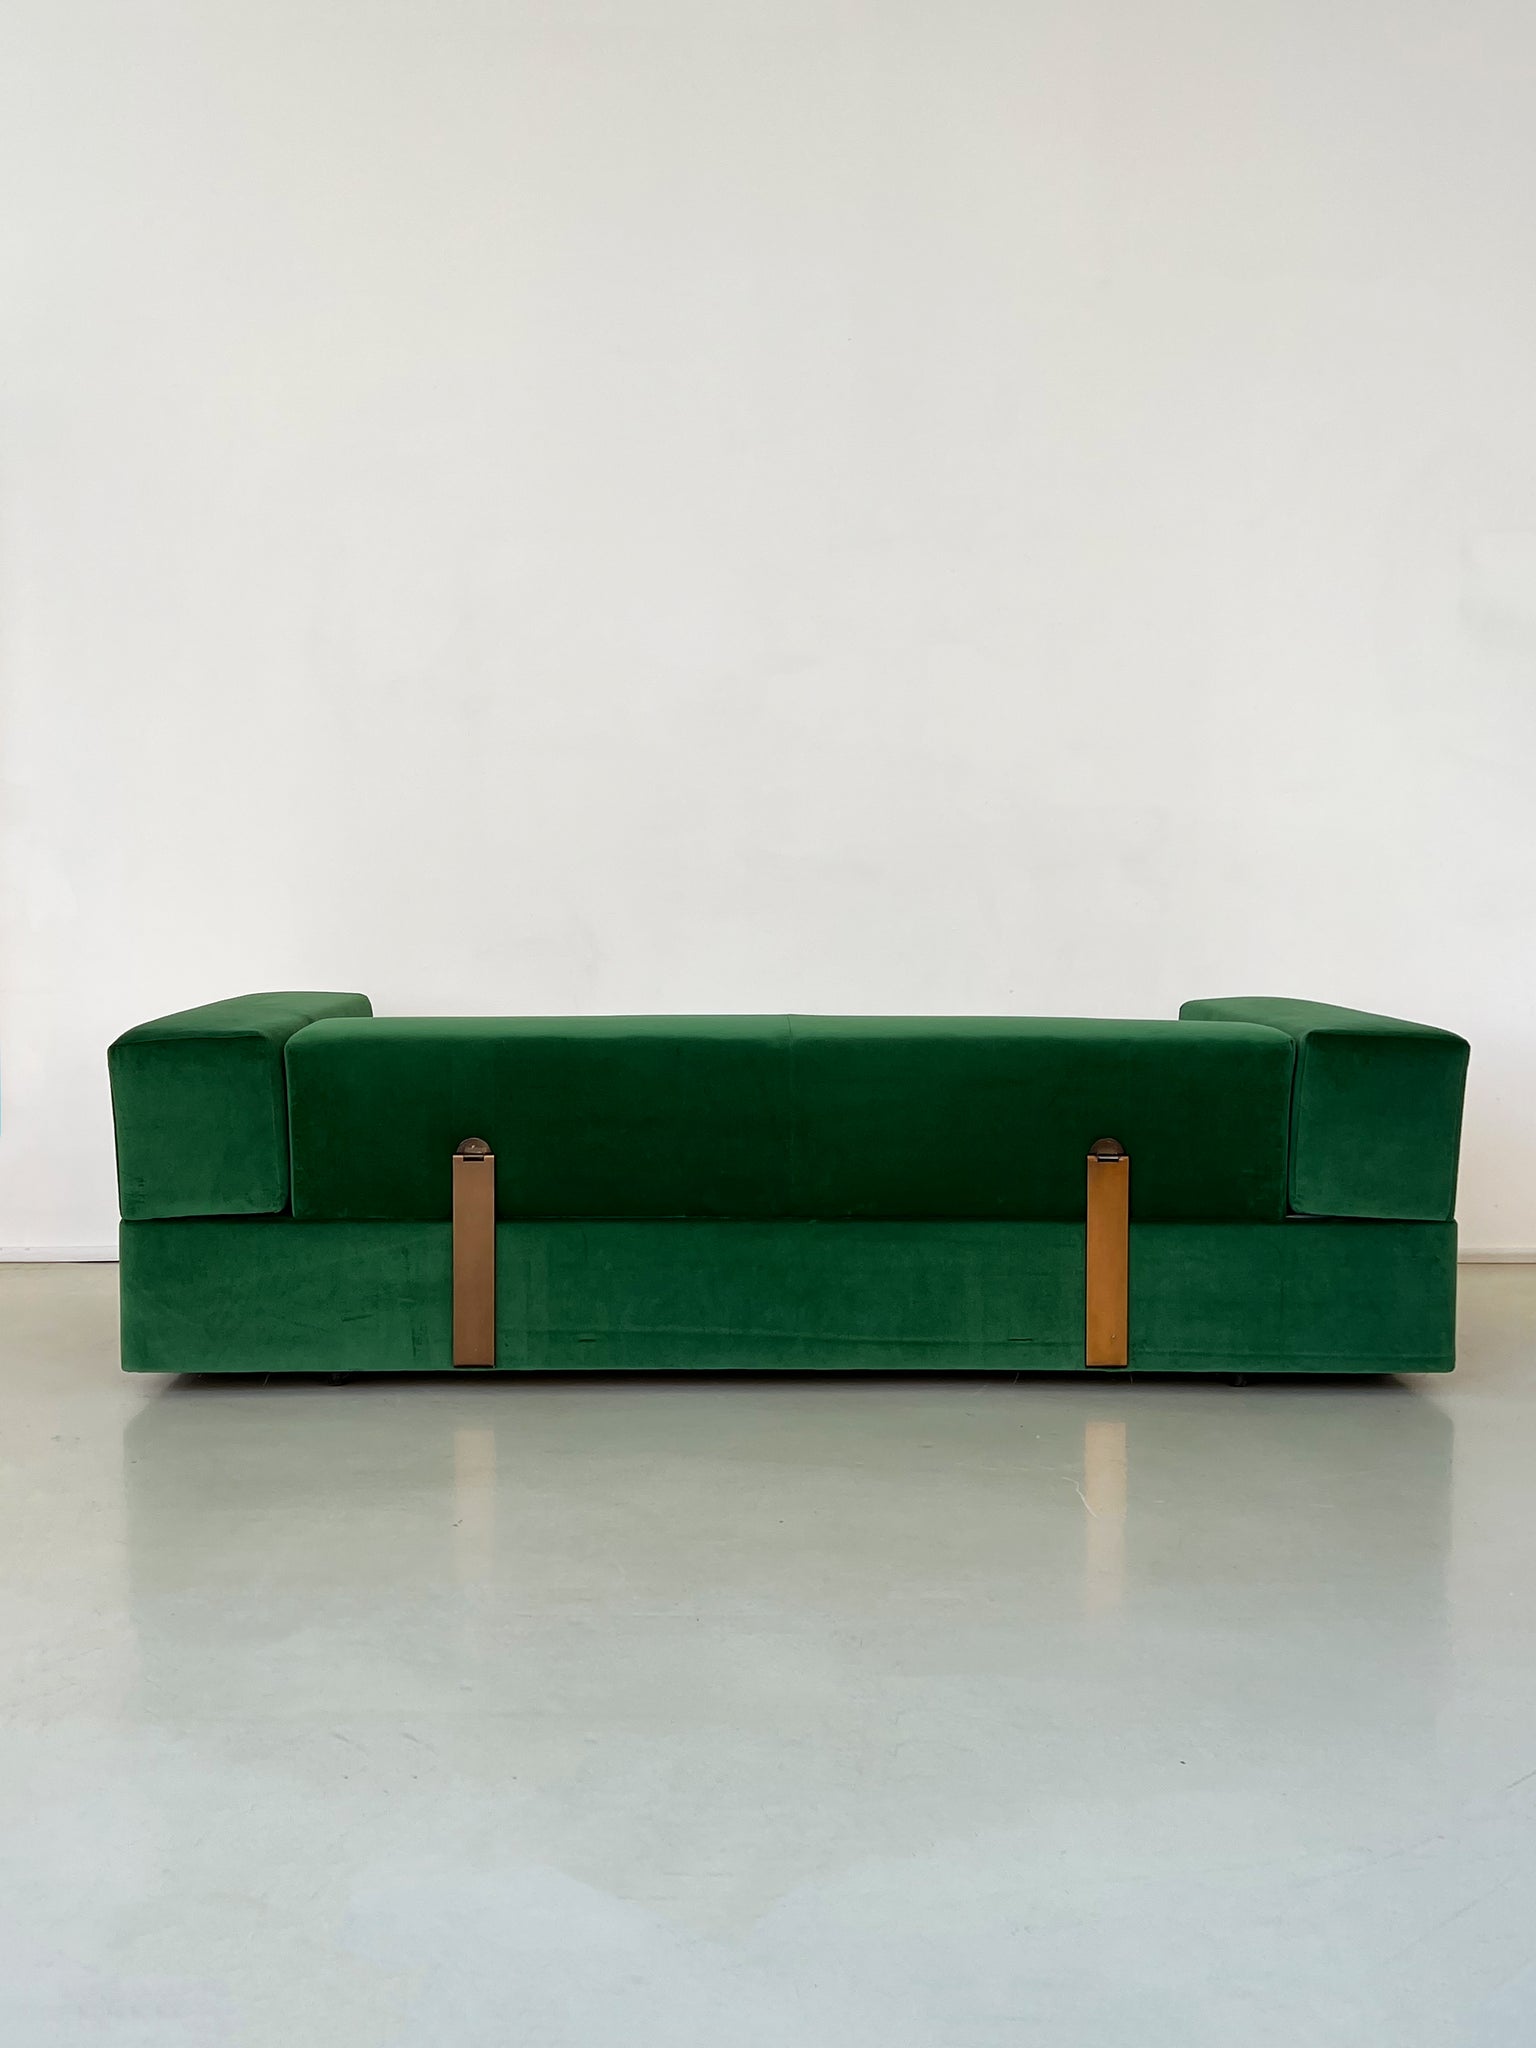 1968 Emerald Green Tito Agnoli for Cinova Model 711 Daybed Sofa